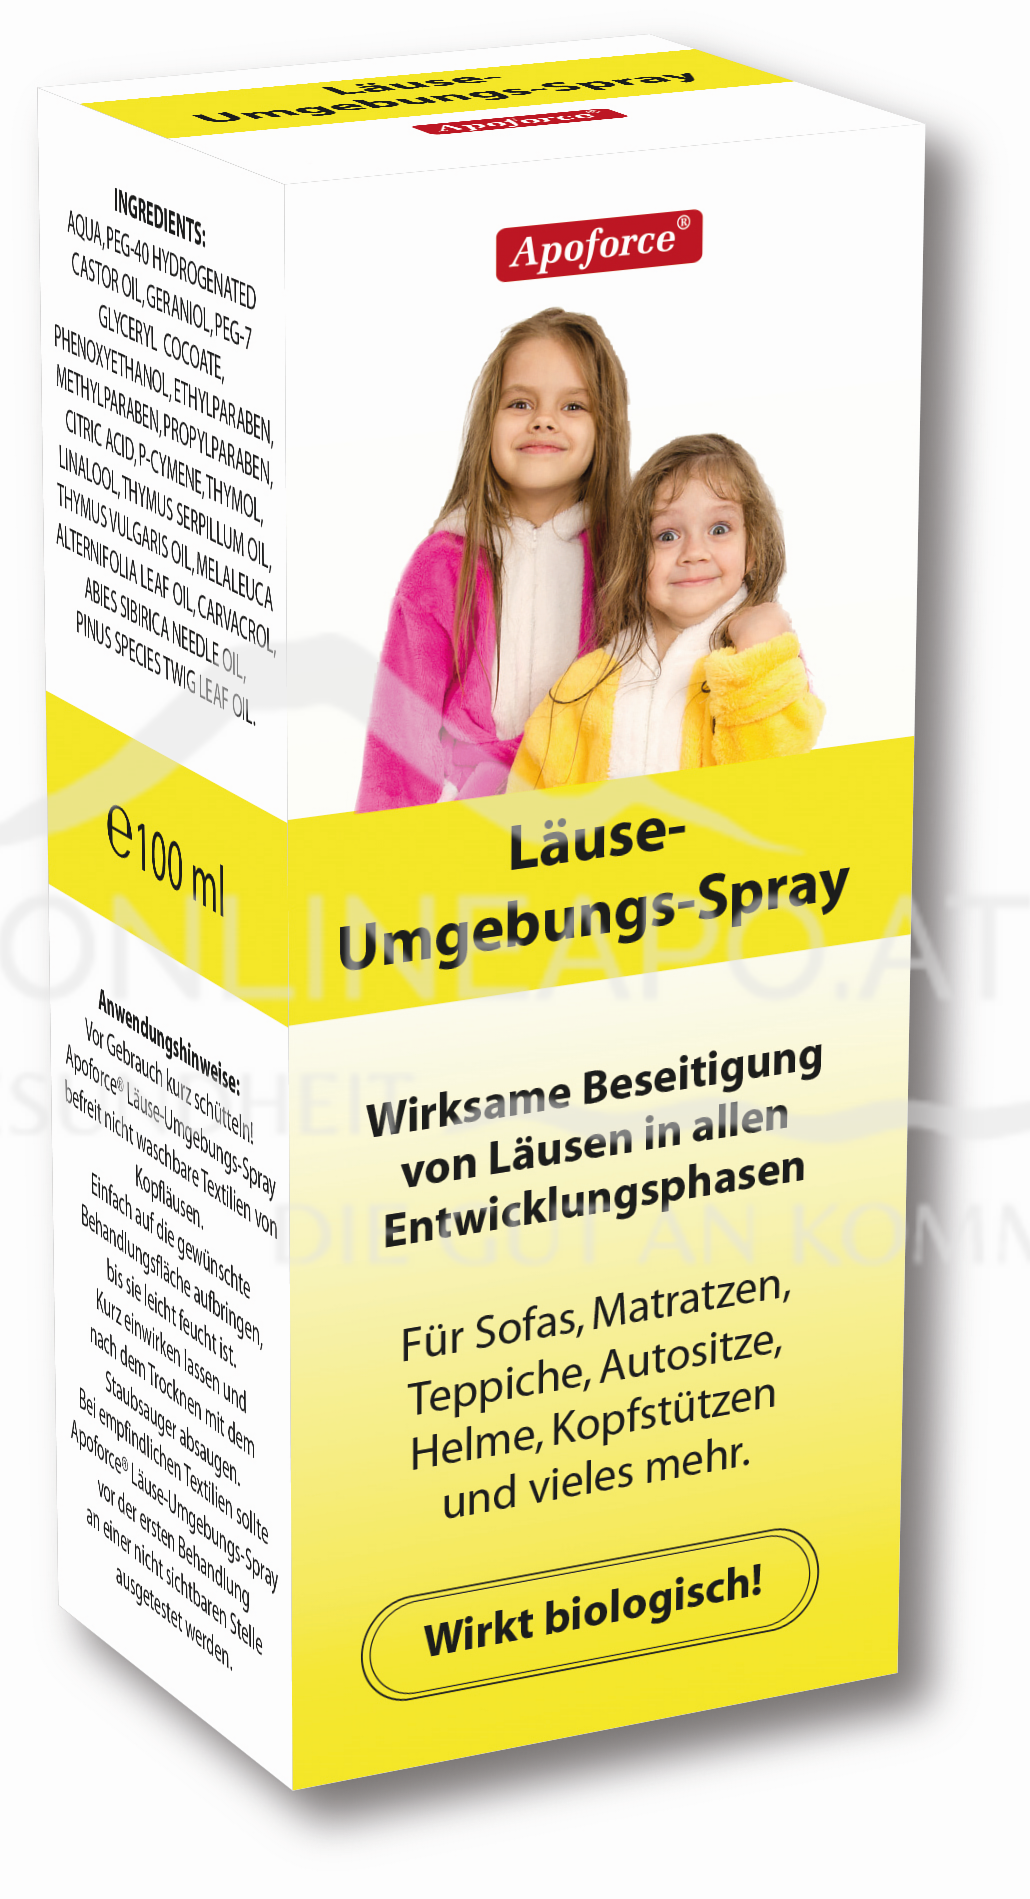 Apoforce® Läuse-Umgebungs-Spray